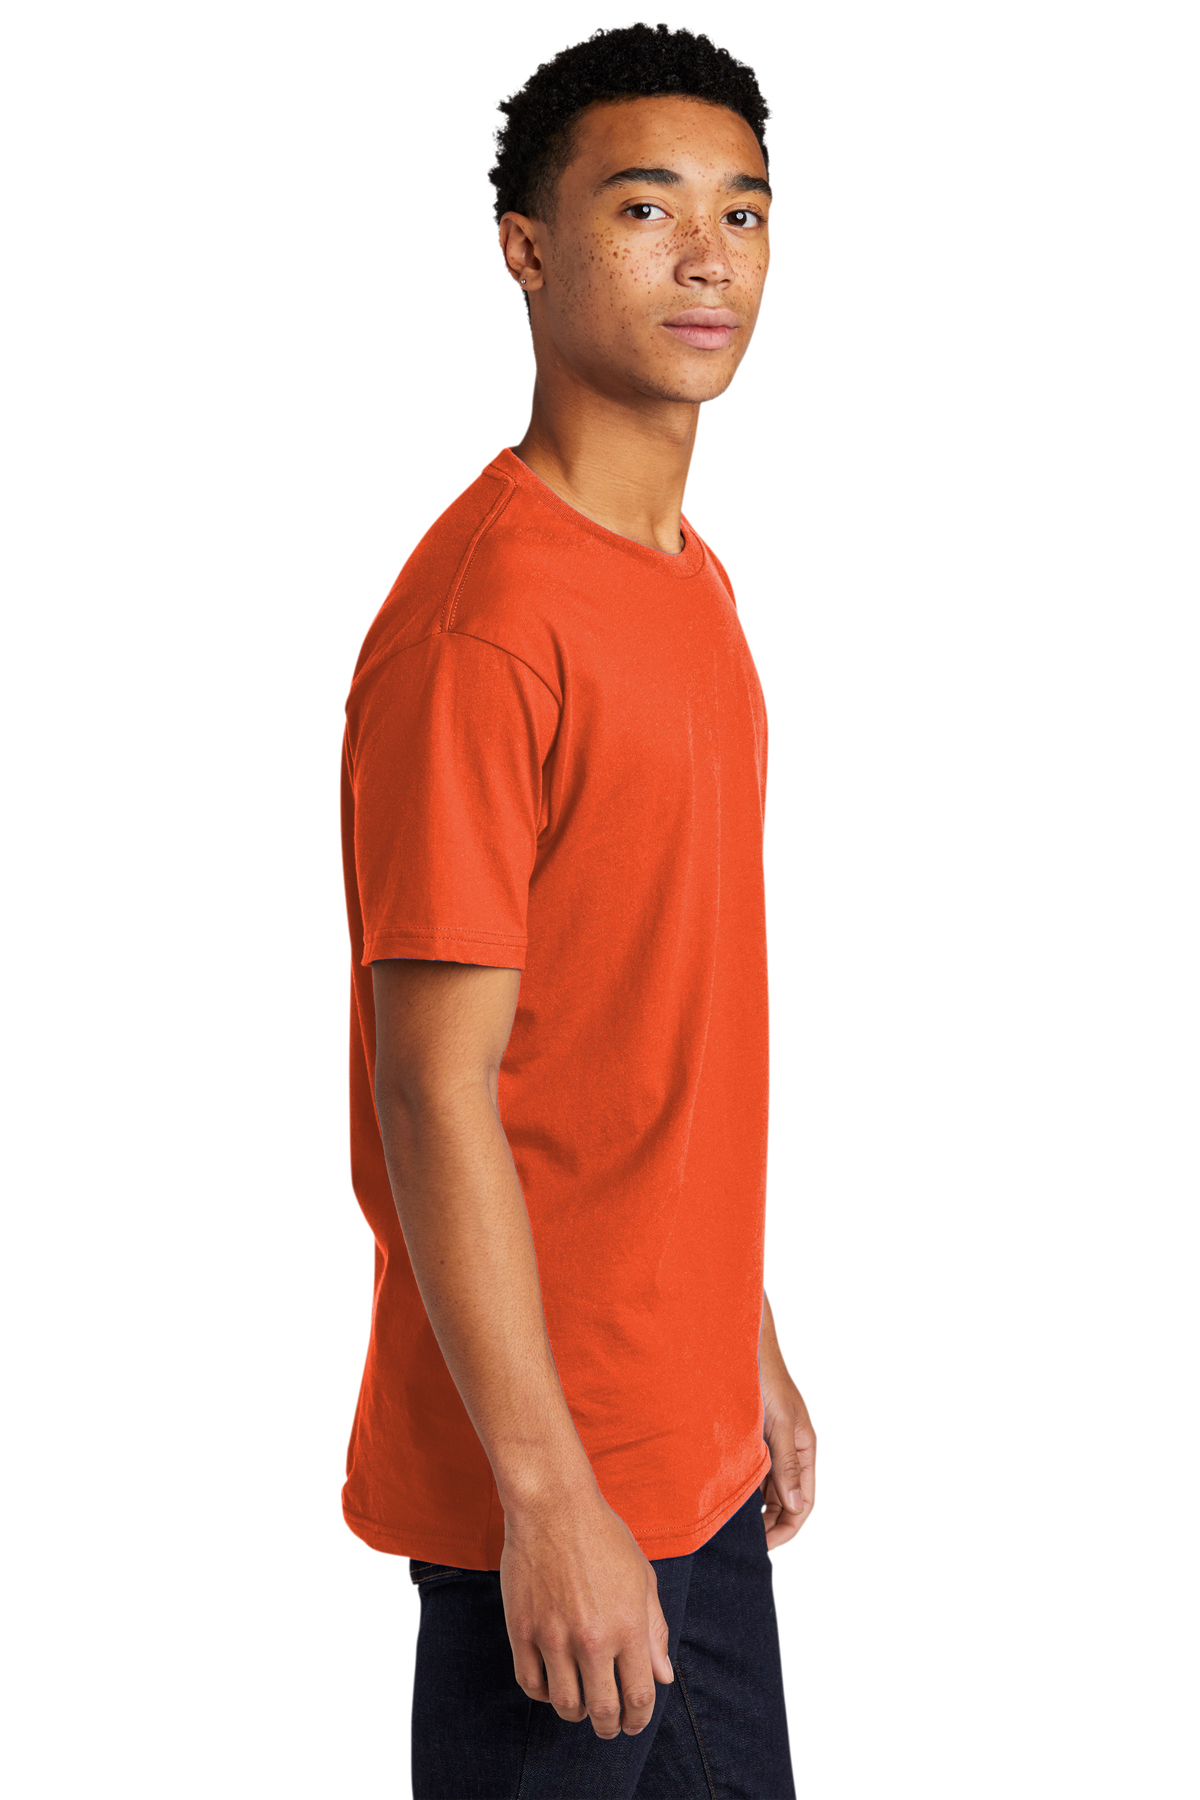 Next Level 3600 Unisex Cotton T Shirt - Royal - XL